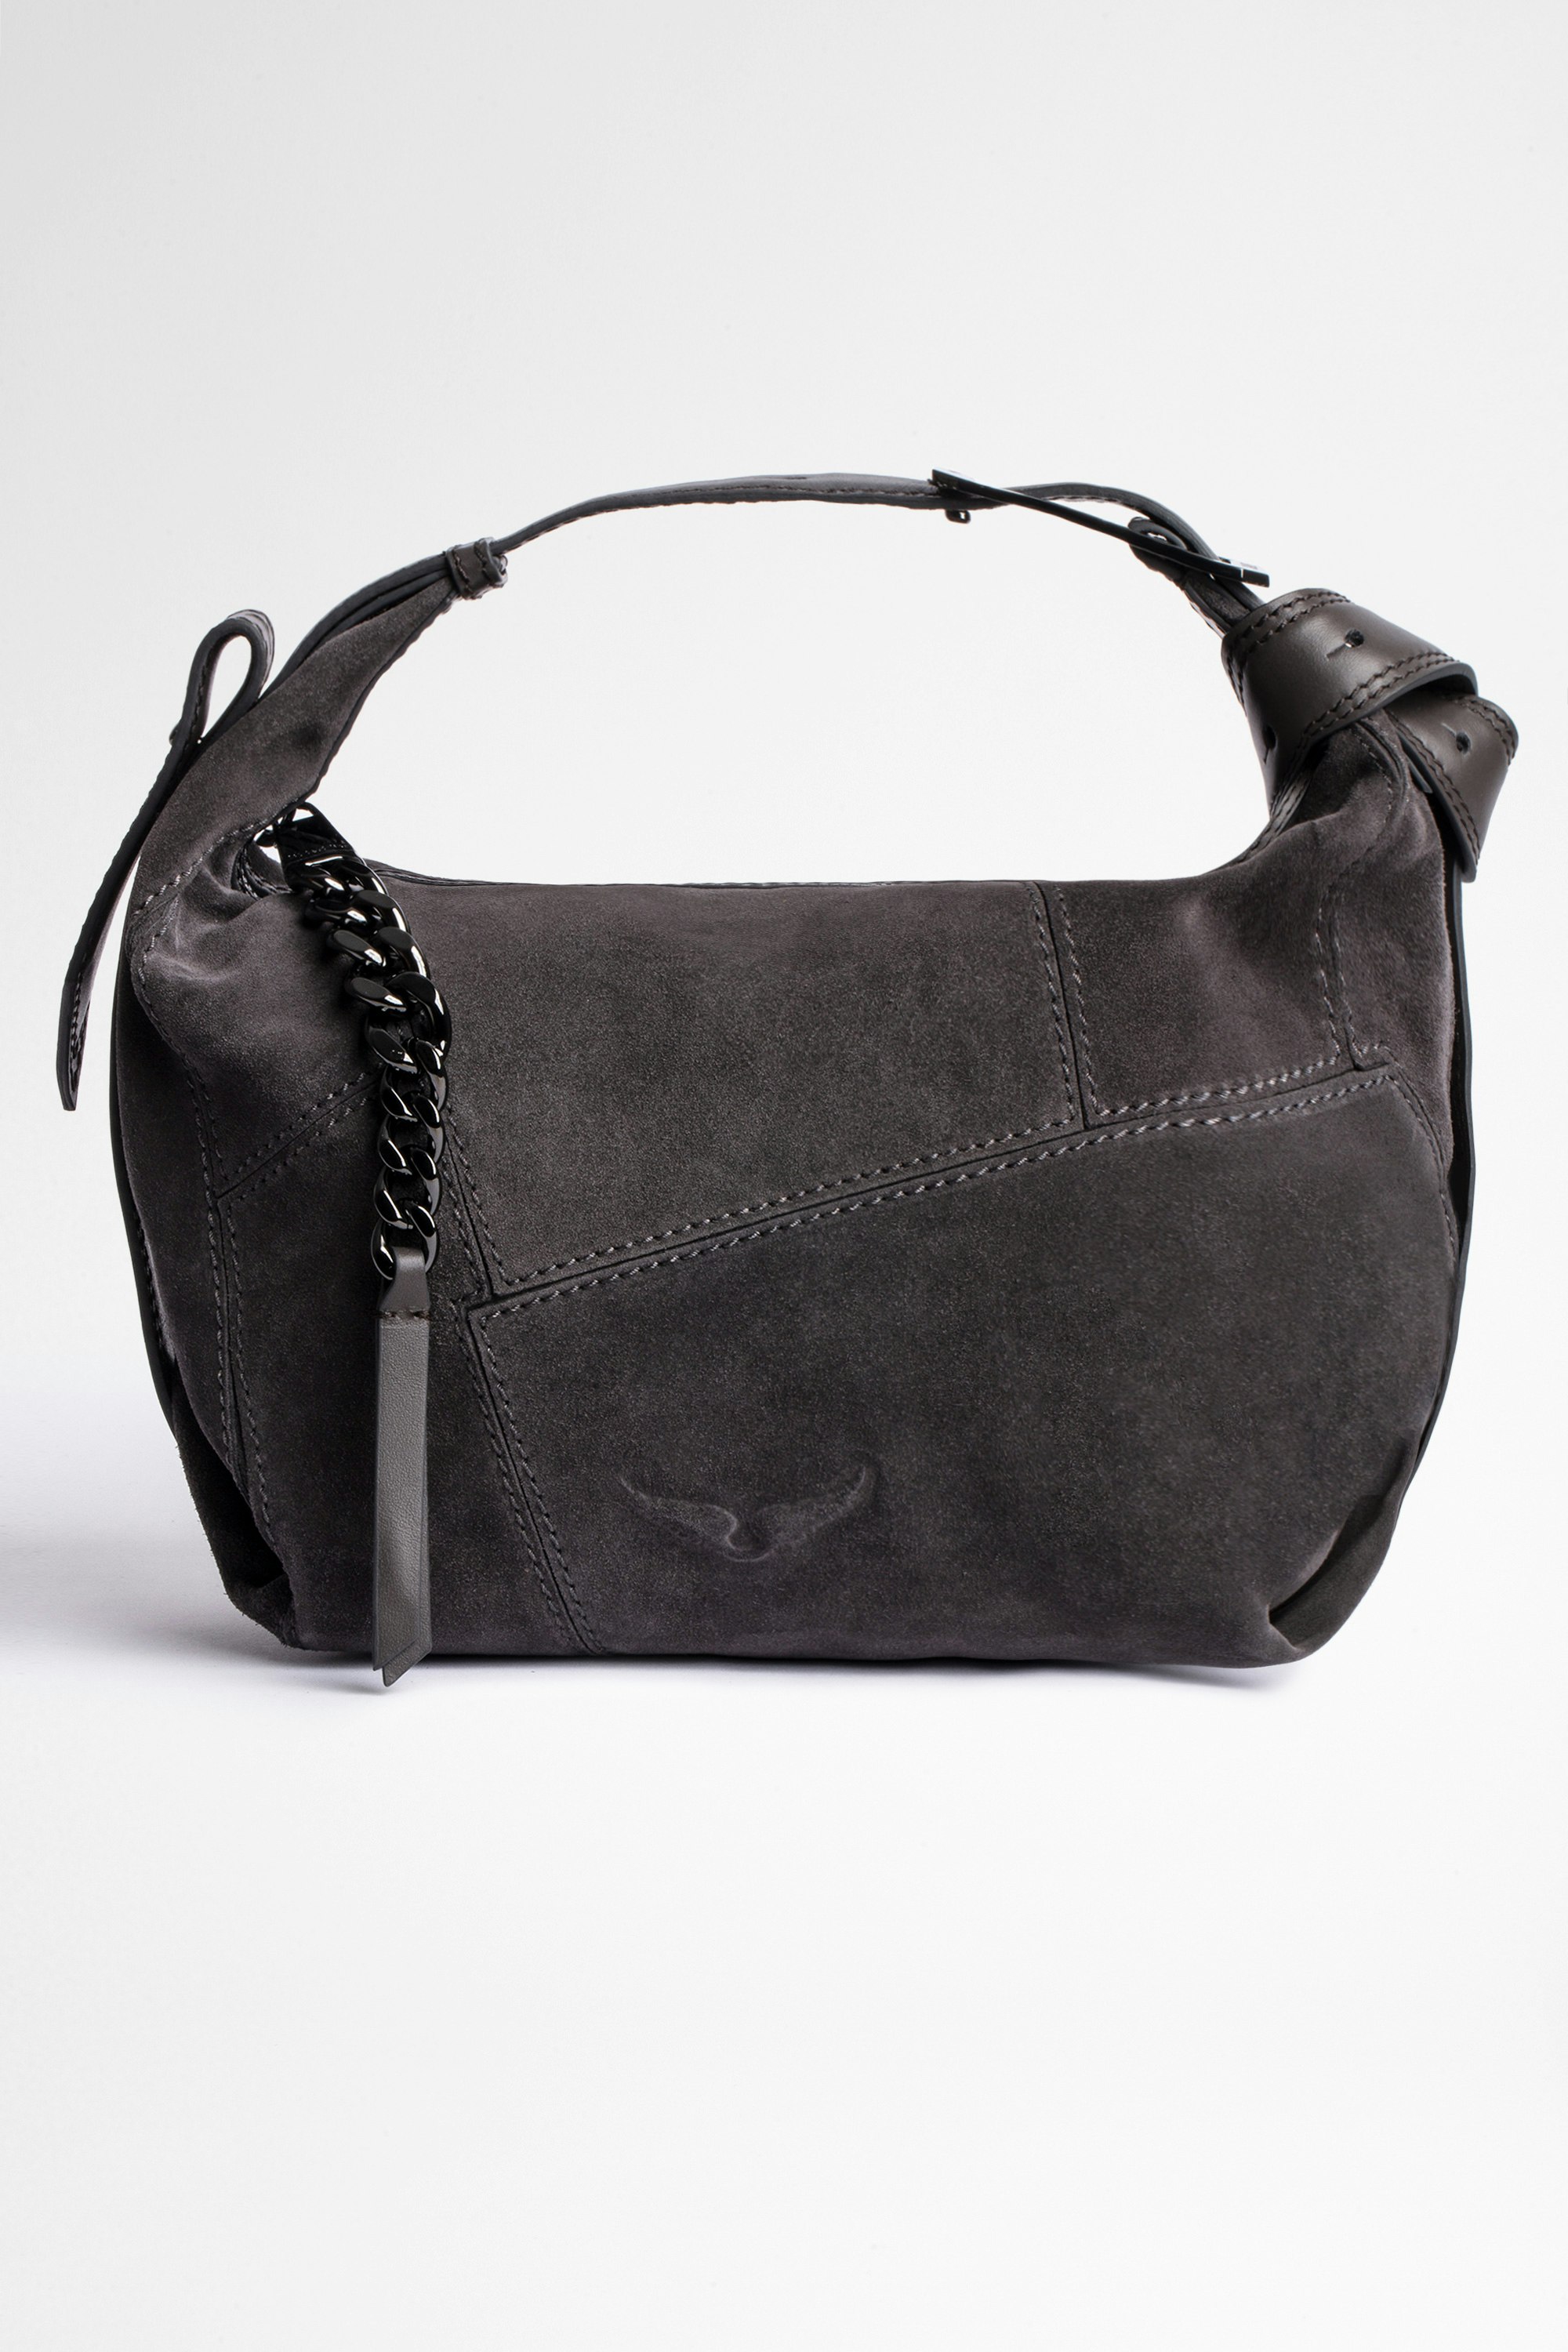 Handtasche Le Cecilia Veloursleder Patchwork Damentasche aus grauem Wildleder-Patchwork, an der Schulter oder crossbody zu tragen